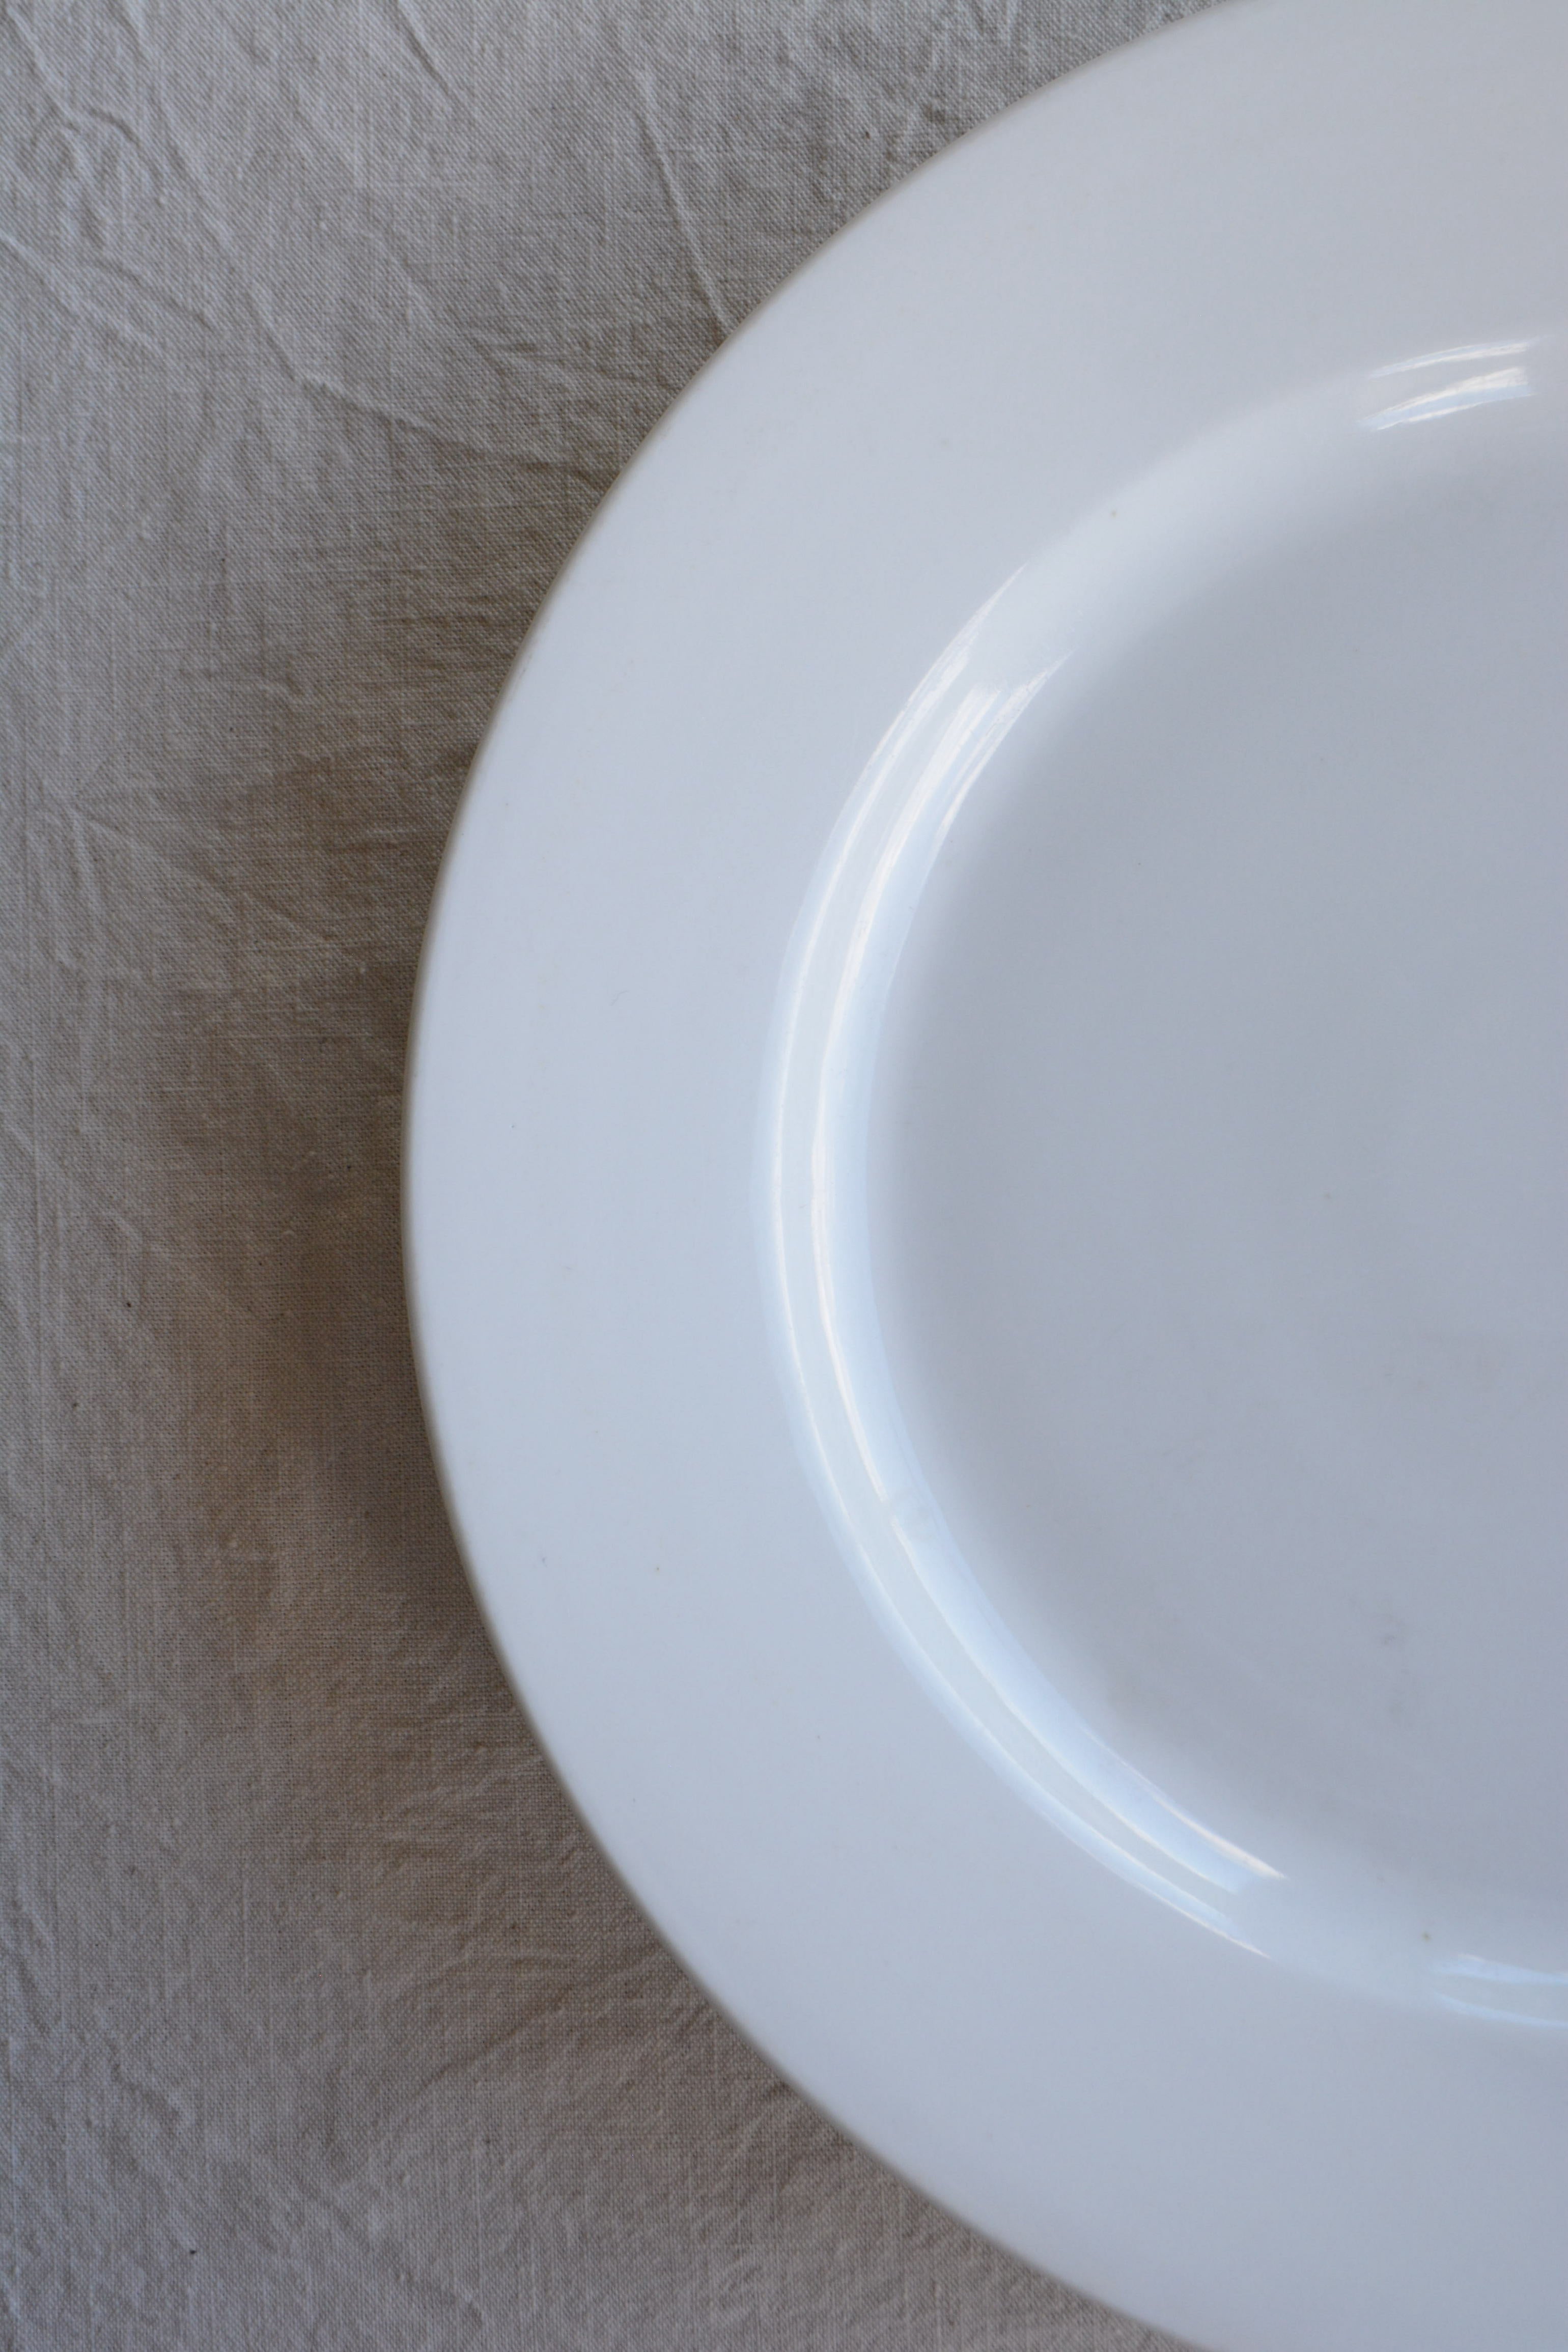 ポーセリン ディナープレート 大皿| フランスアンティーク La YHA | La 